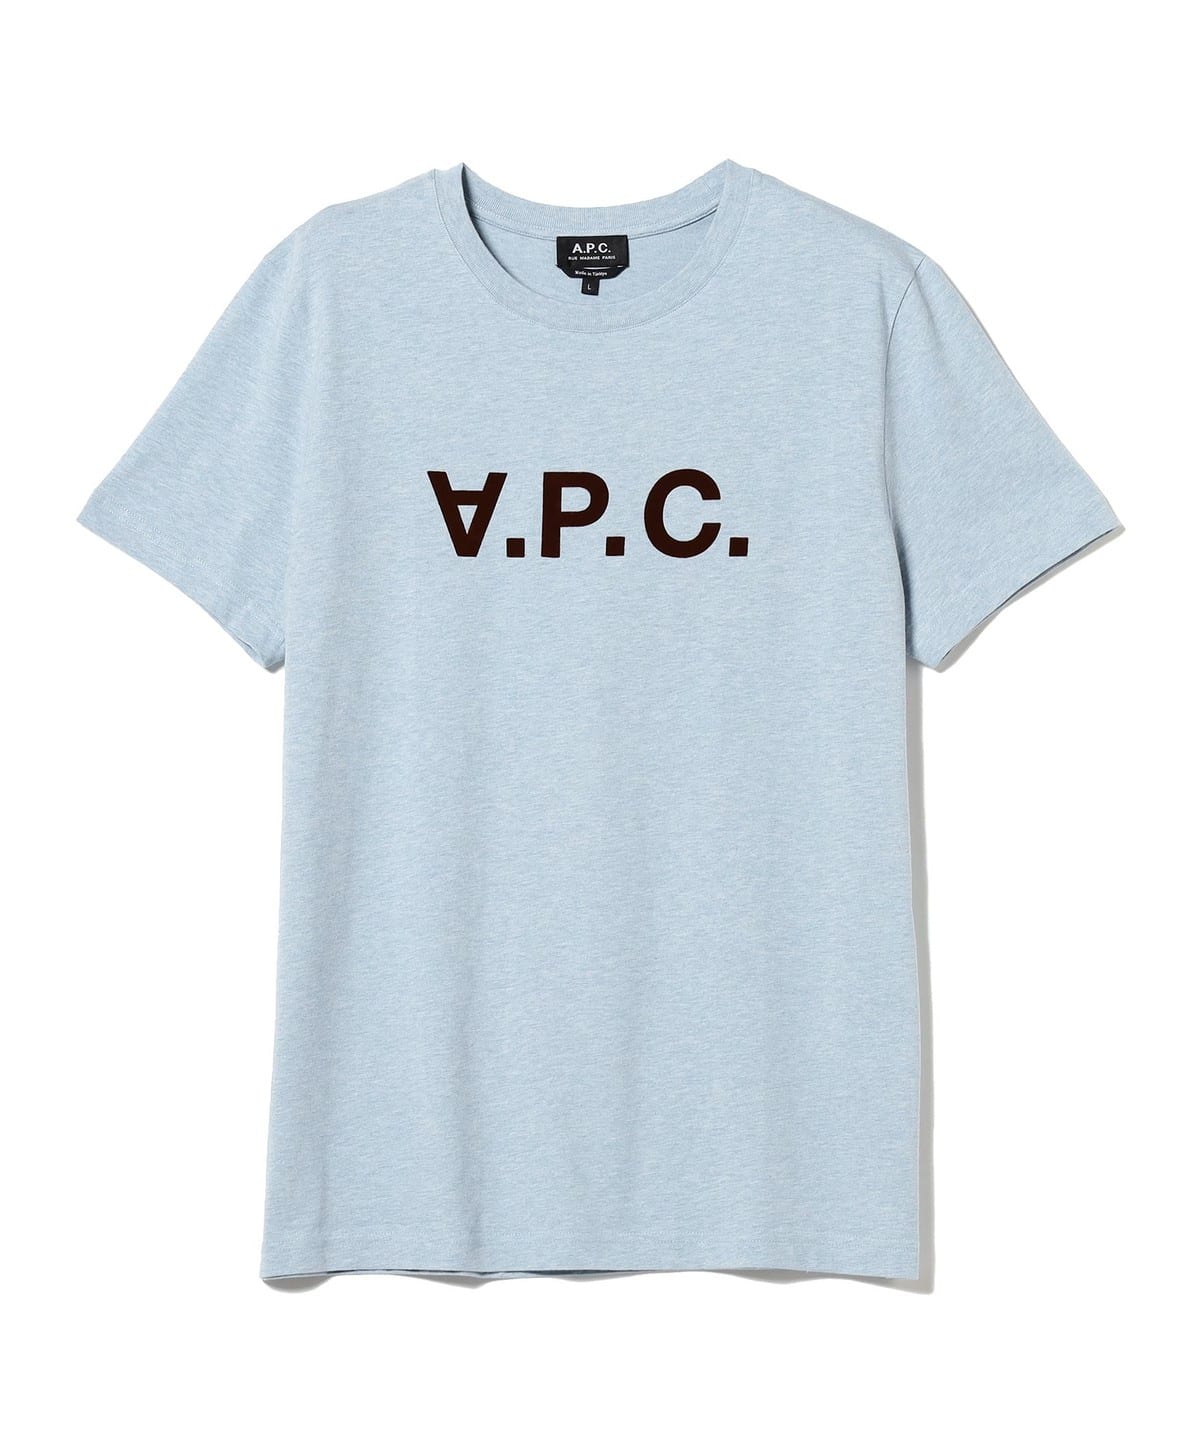 A.P.C v.p.c ロゴ Tシャツ